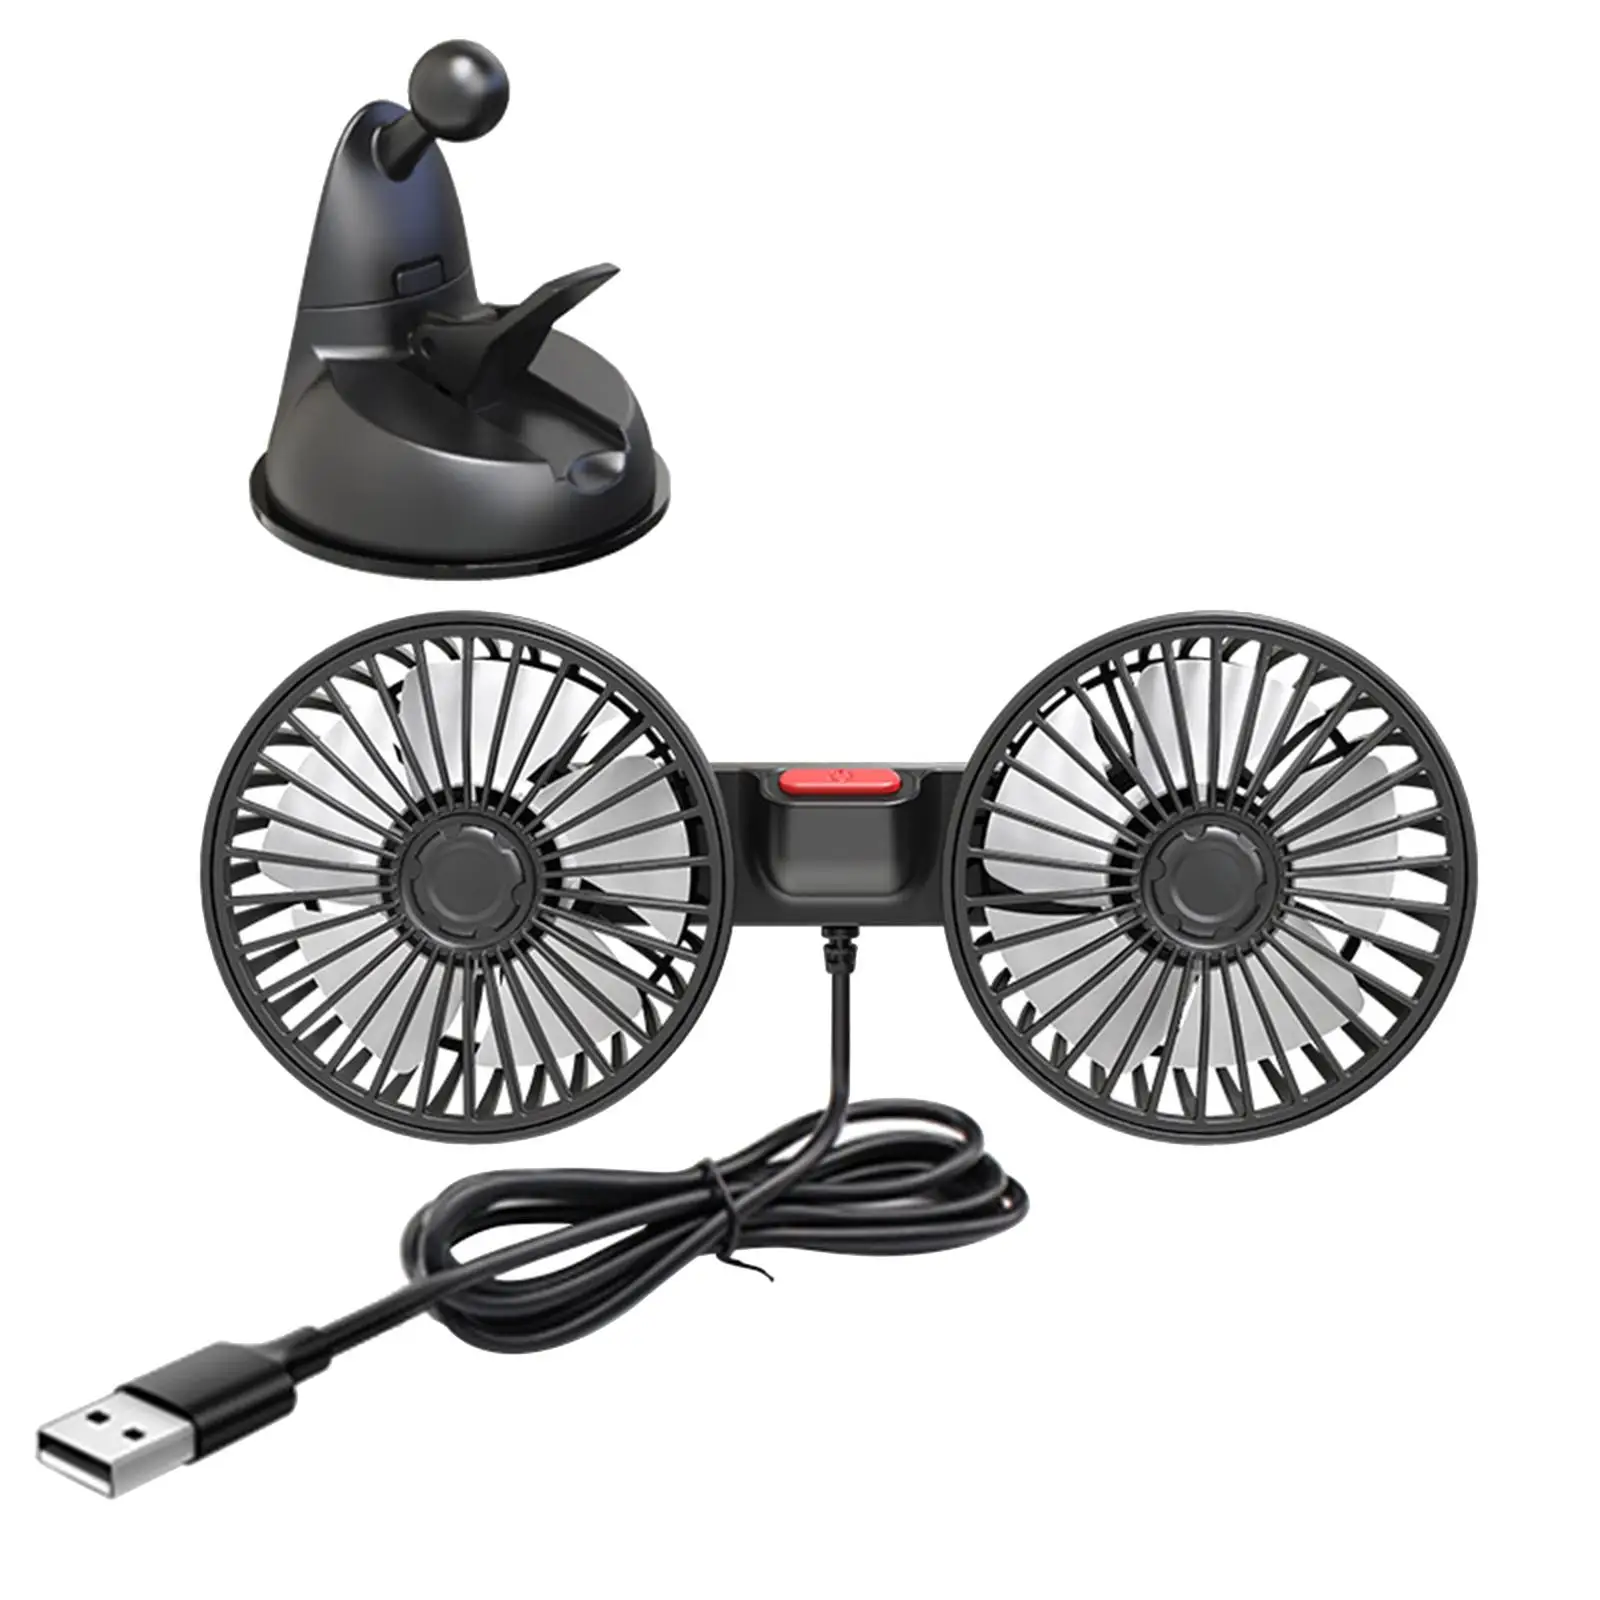 Car Electric Fan Desk Fan Mounted Car Accessories for Home Office Truck